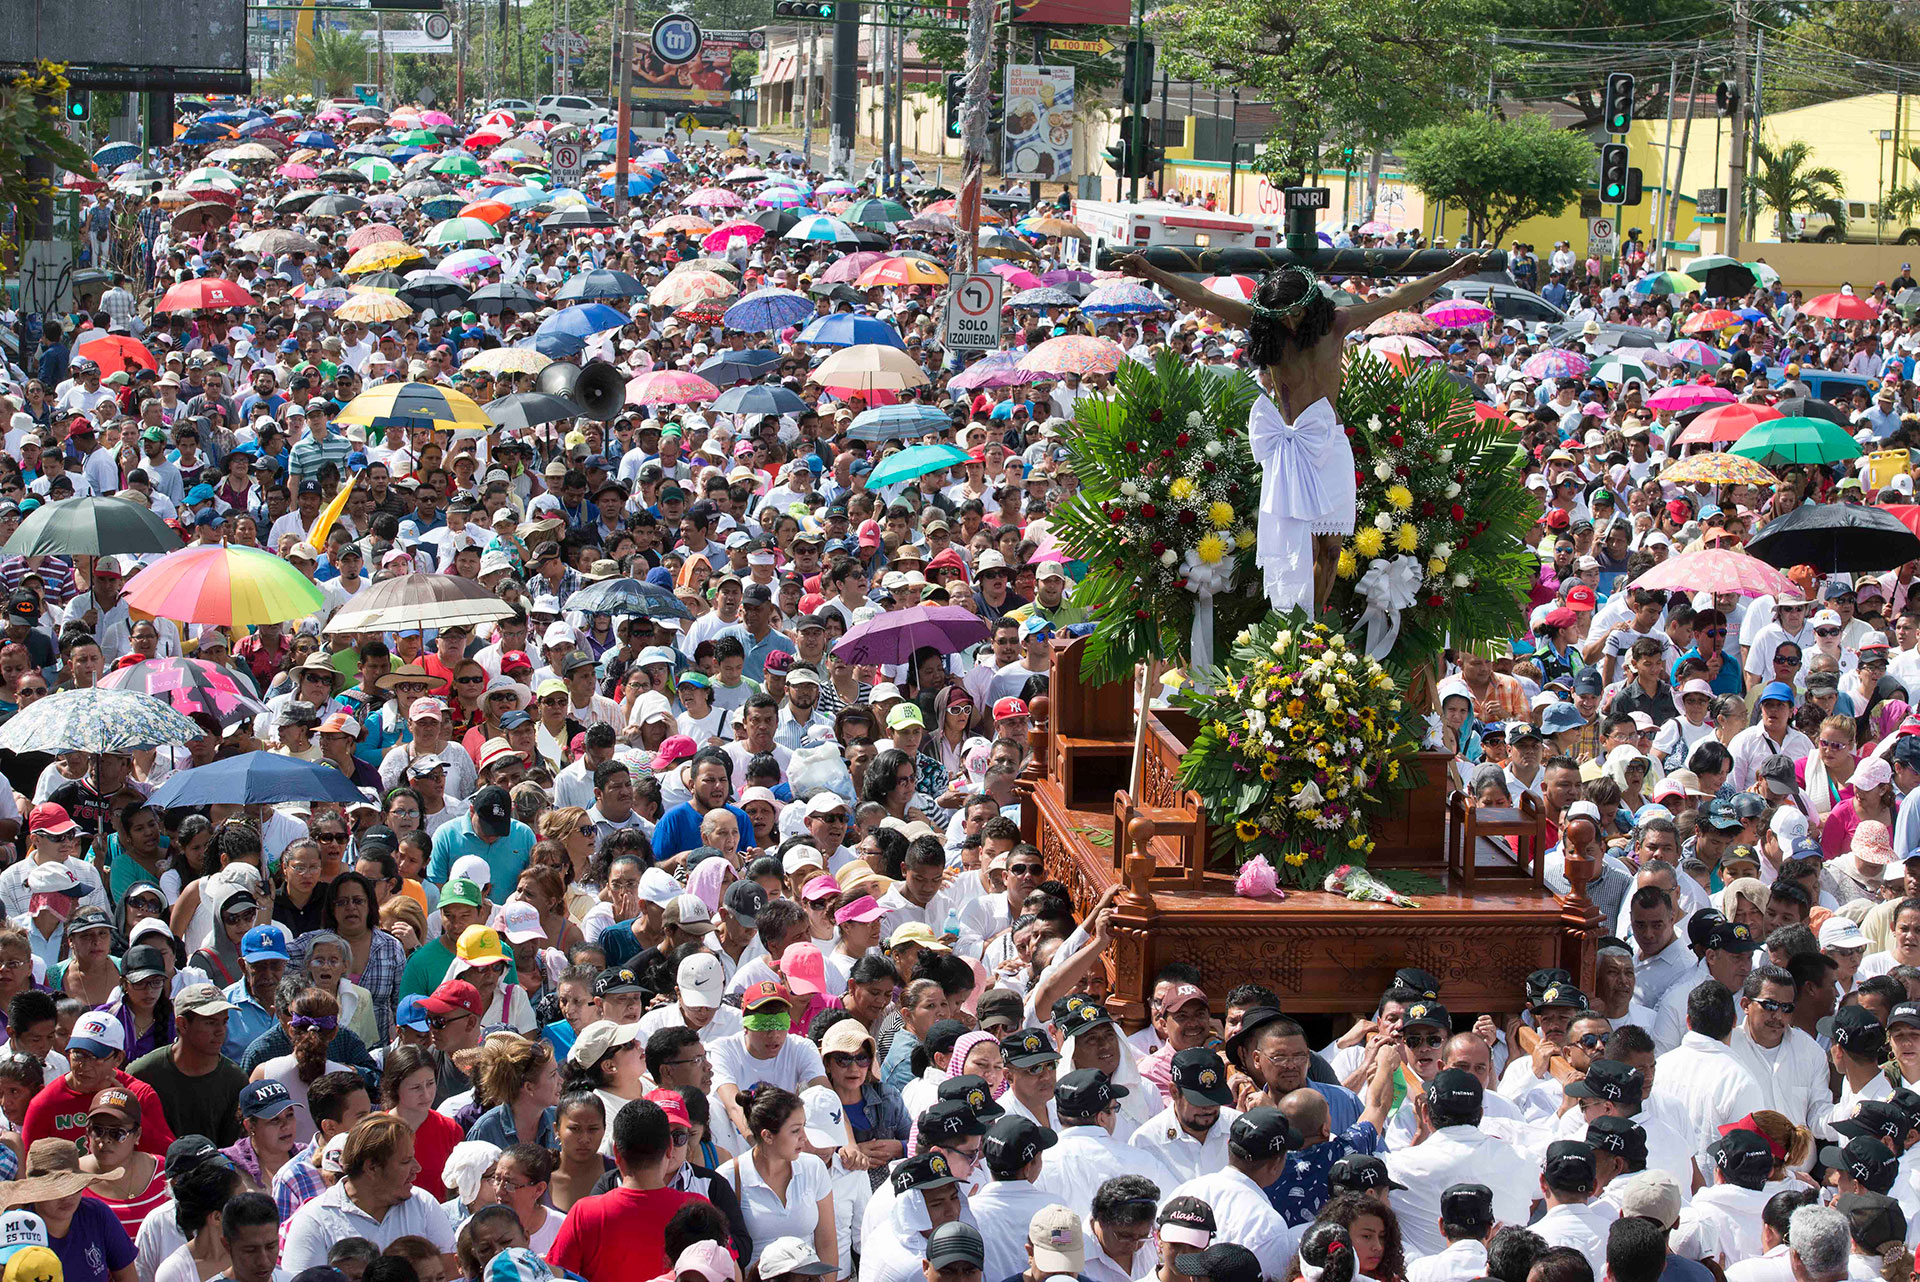 El régimen nicaragüense teme a "las inmensas multitudes" que acompañan las tradiciones de la iglesia Católica, afirma monseñor José Antonio Canales, obispo de Danlí, Honduras. (Foto archivo La Prensa)